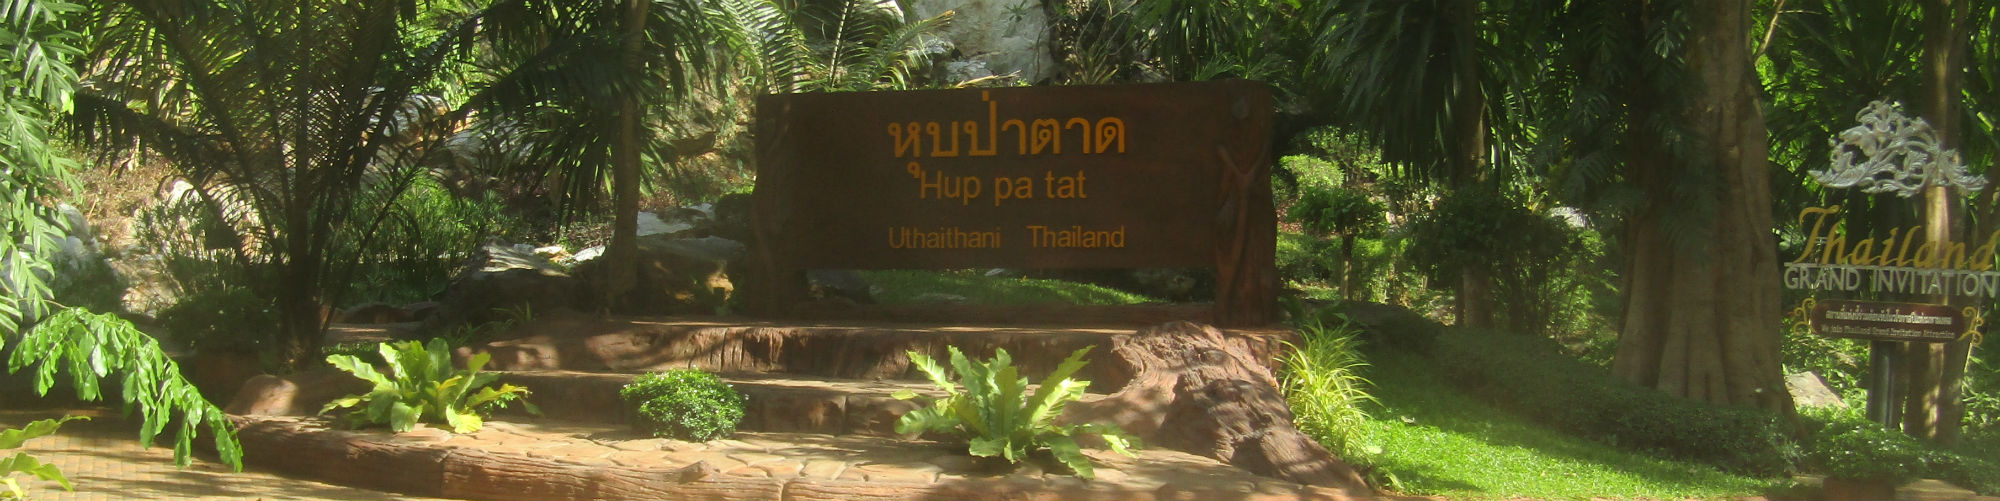 Hup Pa That, Lan Sak District, Uthai Thani Province